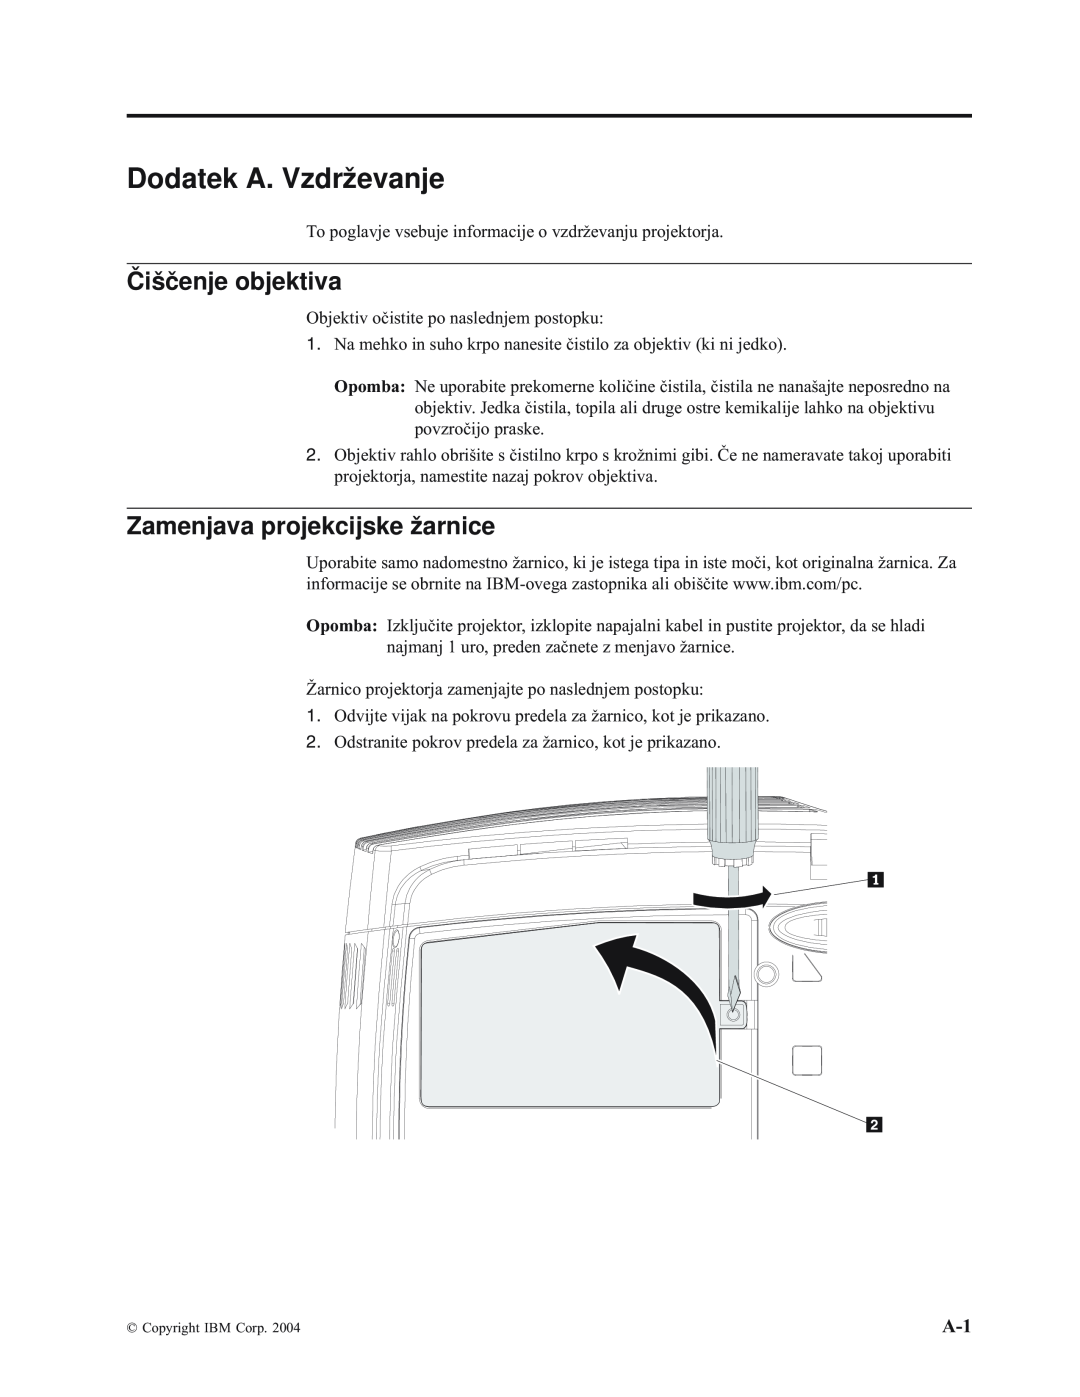 IBM E400 manual Dodatek A. Vzdrževanje, Čiščenje objektiva, Zamenjava projekcijske žarnice 